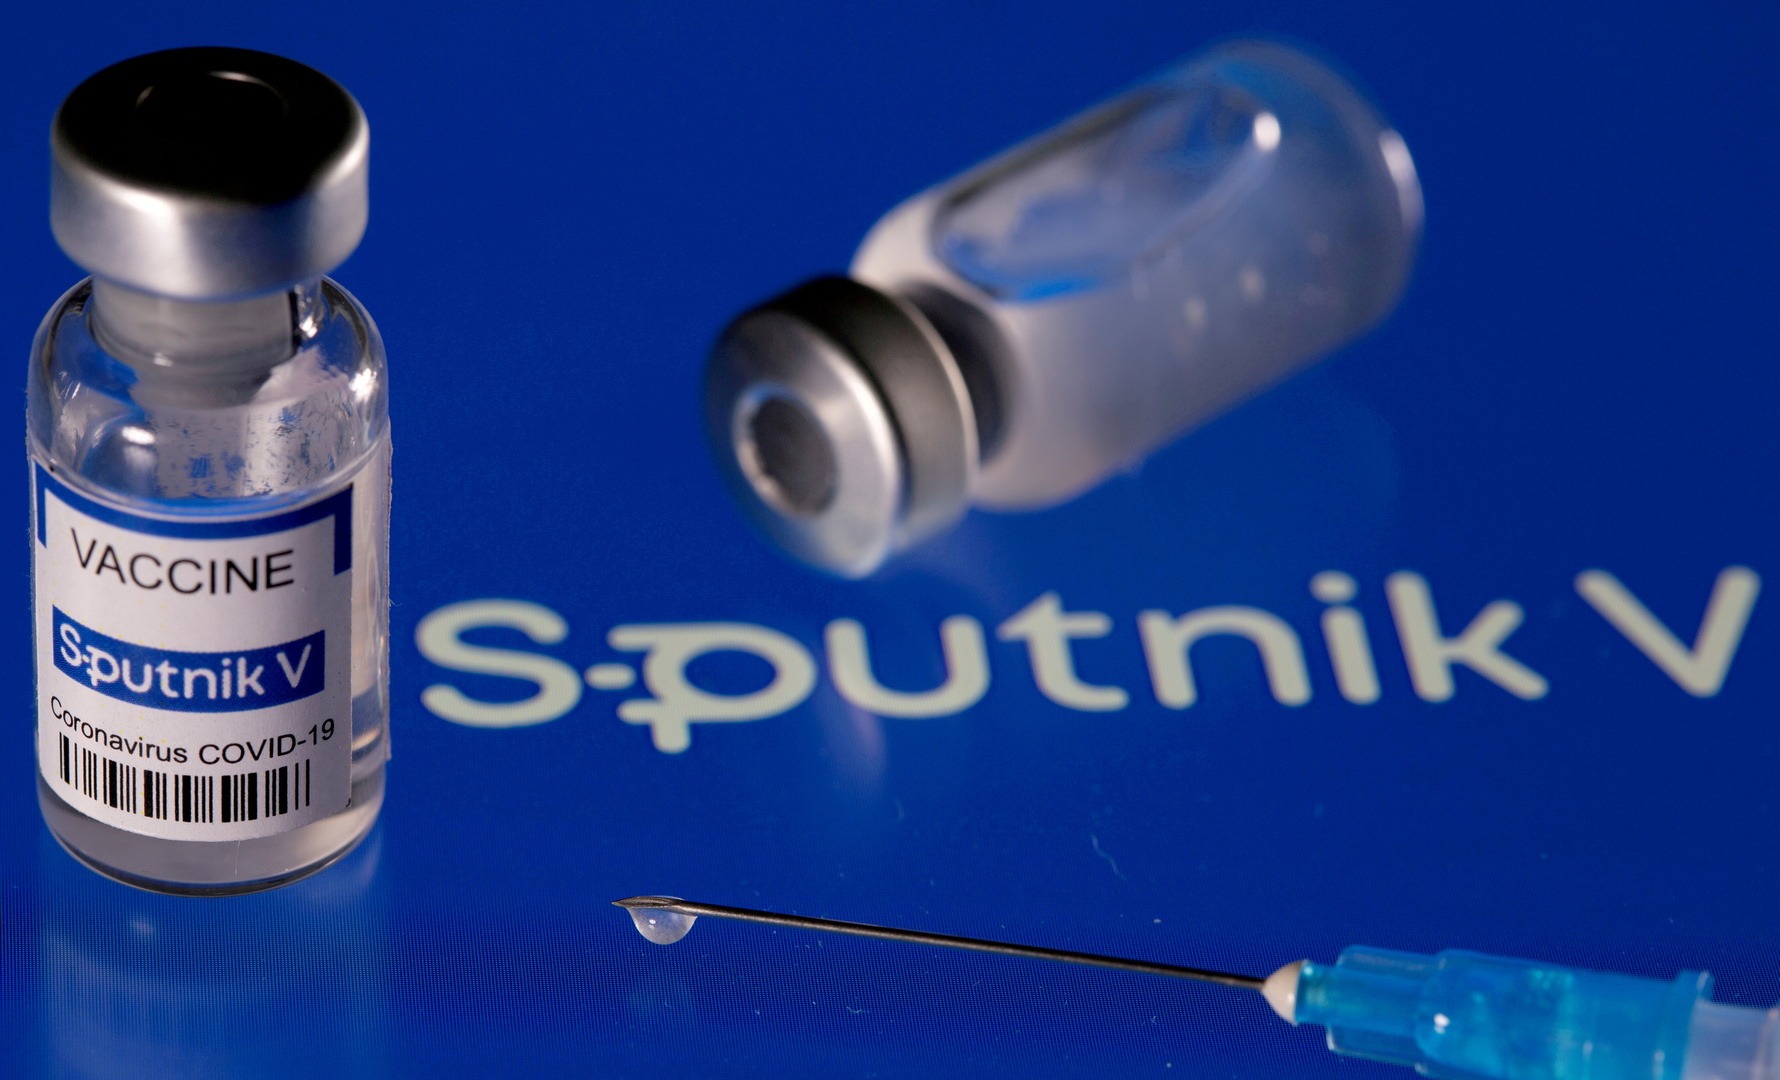 عالم فيروسات: اعتماد الصحة العالمية للقاح “سبوتنيك V” سيضع حداً لمروجي الأوهام